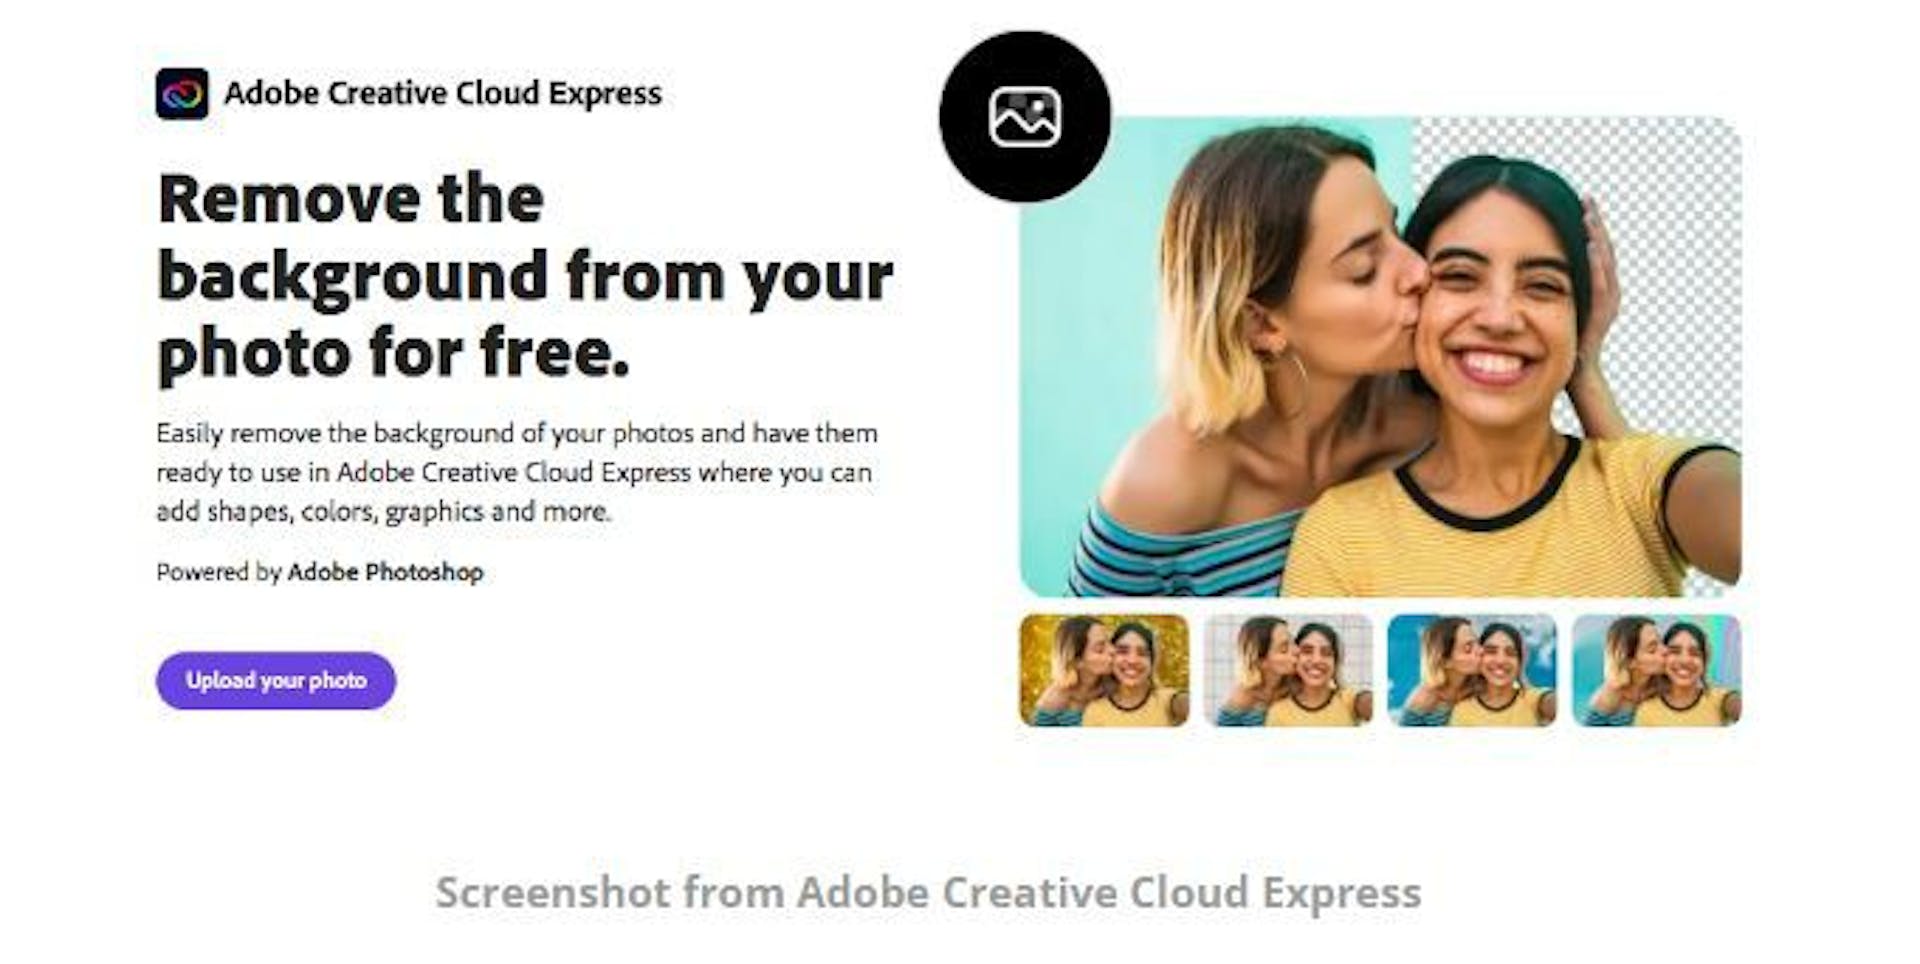 Estrutura clara na página do produto Adobe Creative Cloud Express